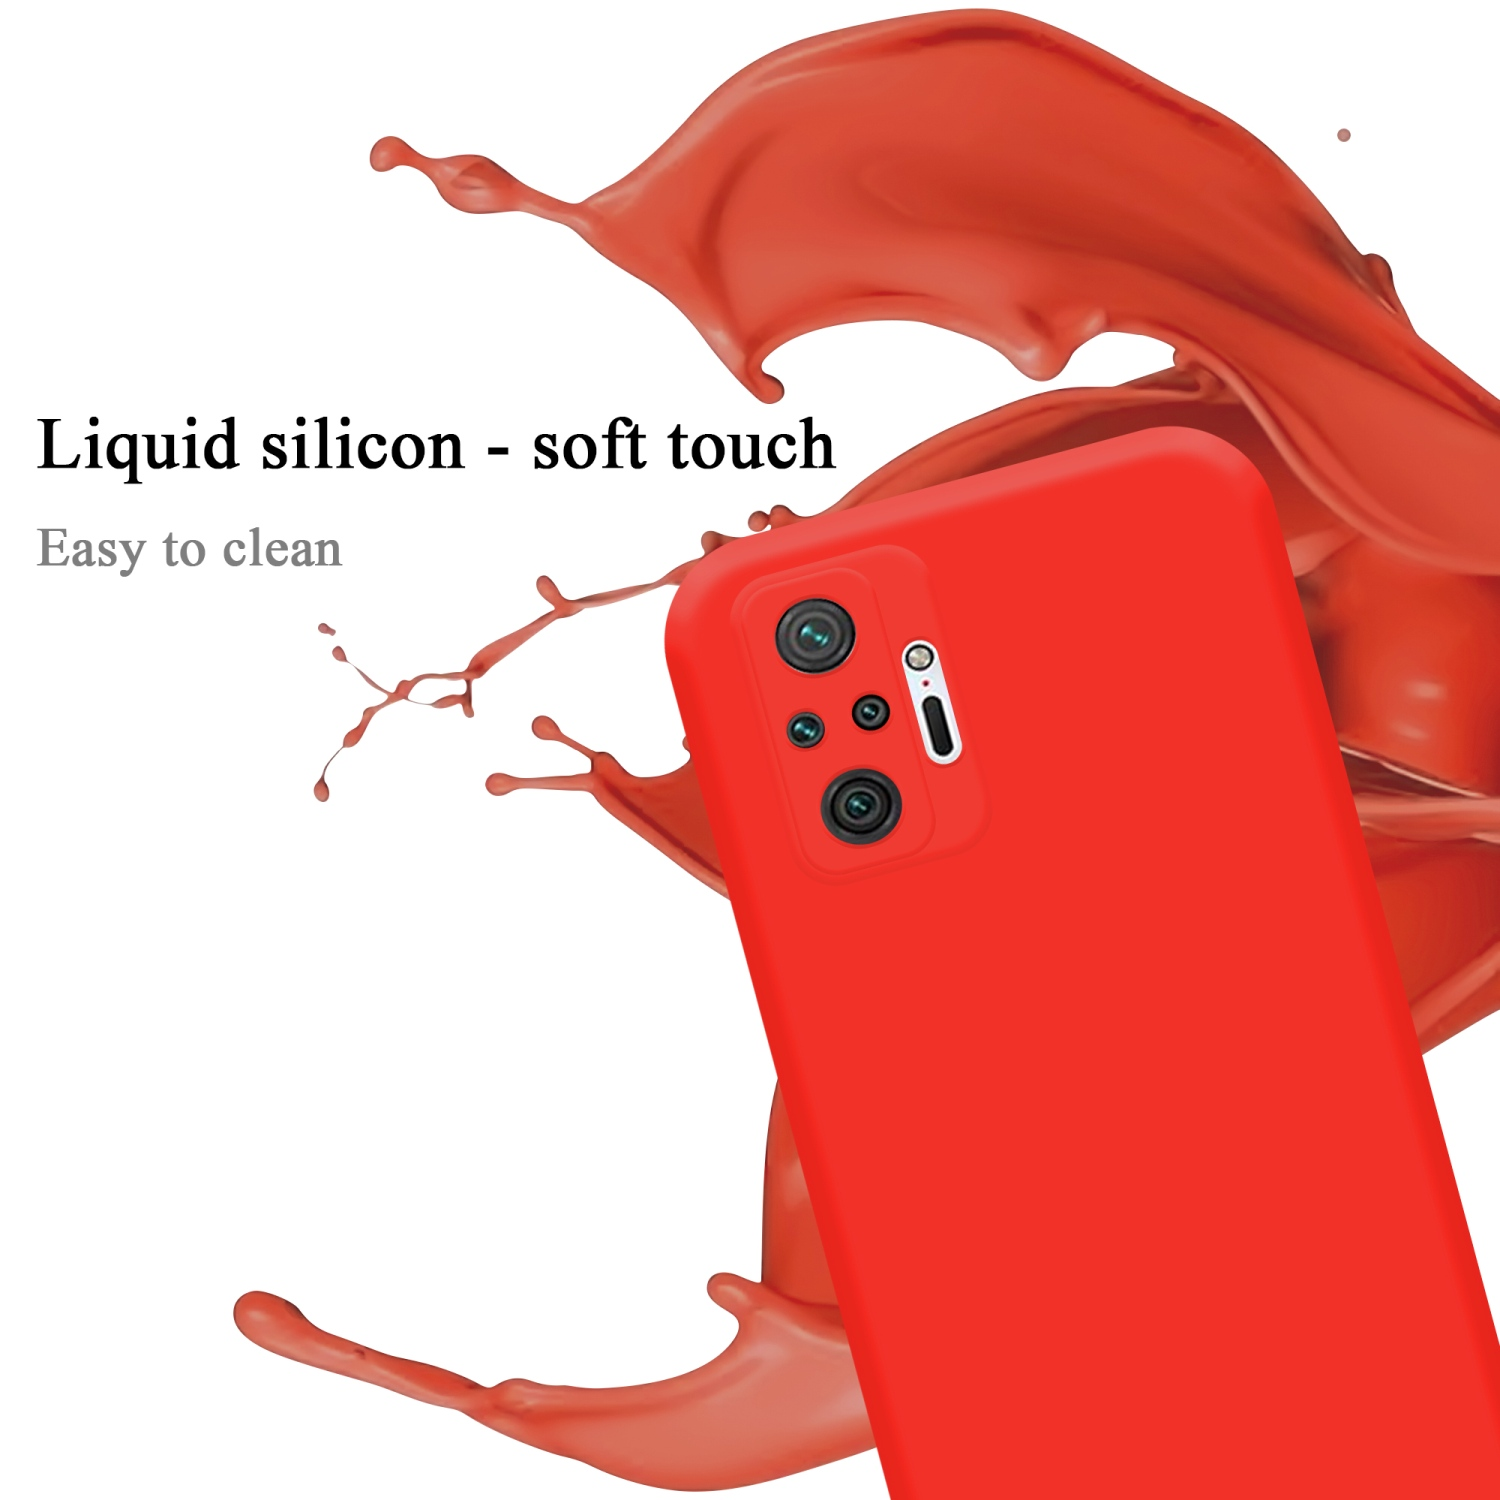 CADORABO Hülle im Liquid Silicone LIQUID Case RedMi Backcover, ROT 10 PRO, Style, NOTE Xiaomi